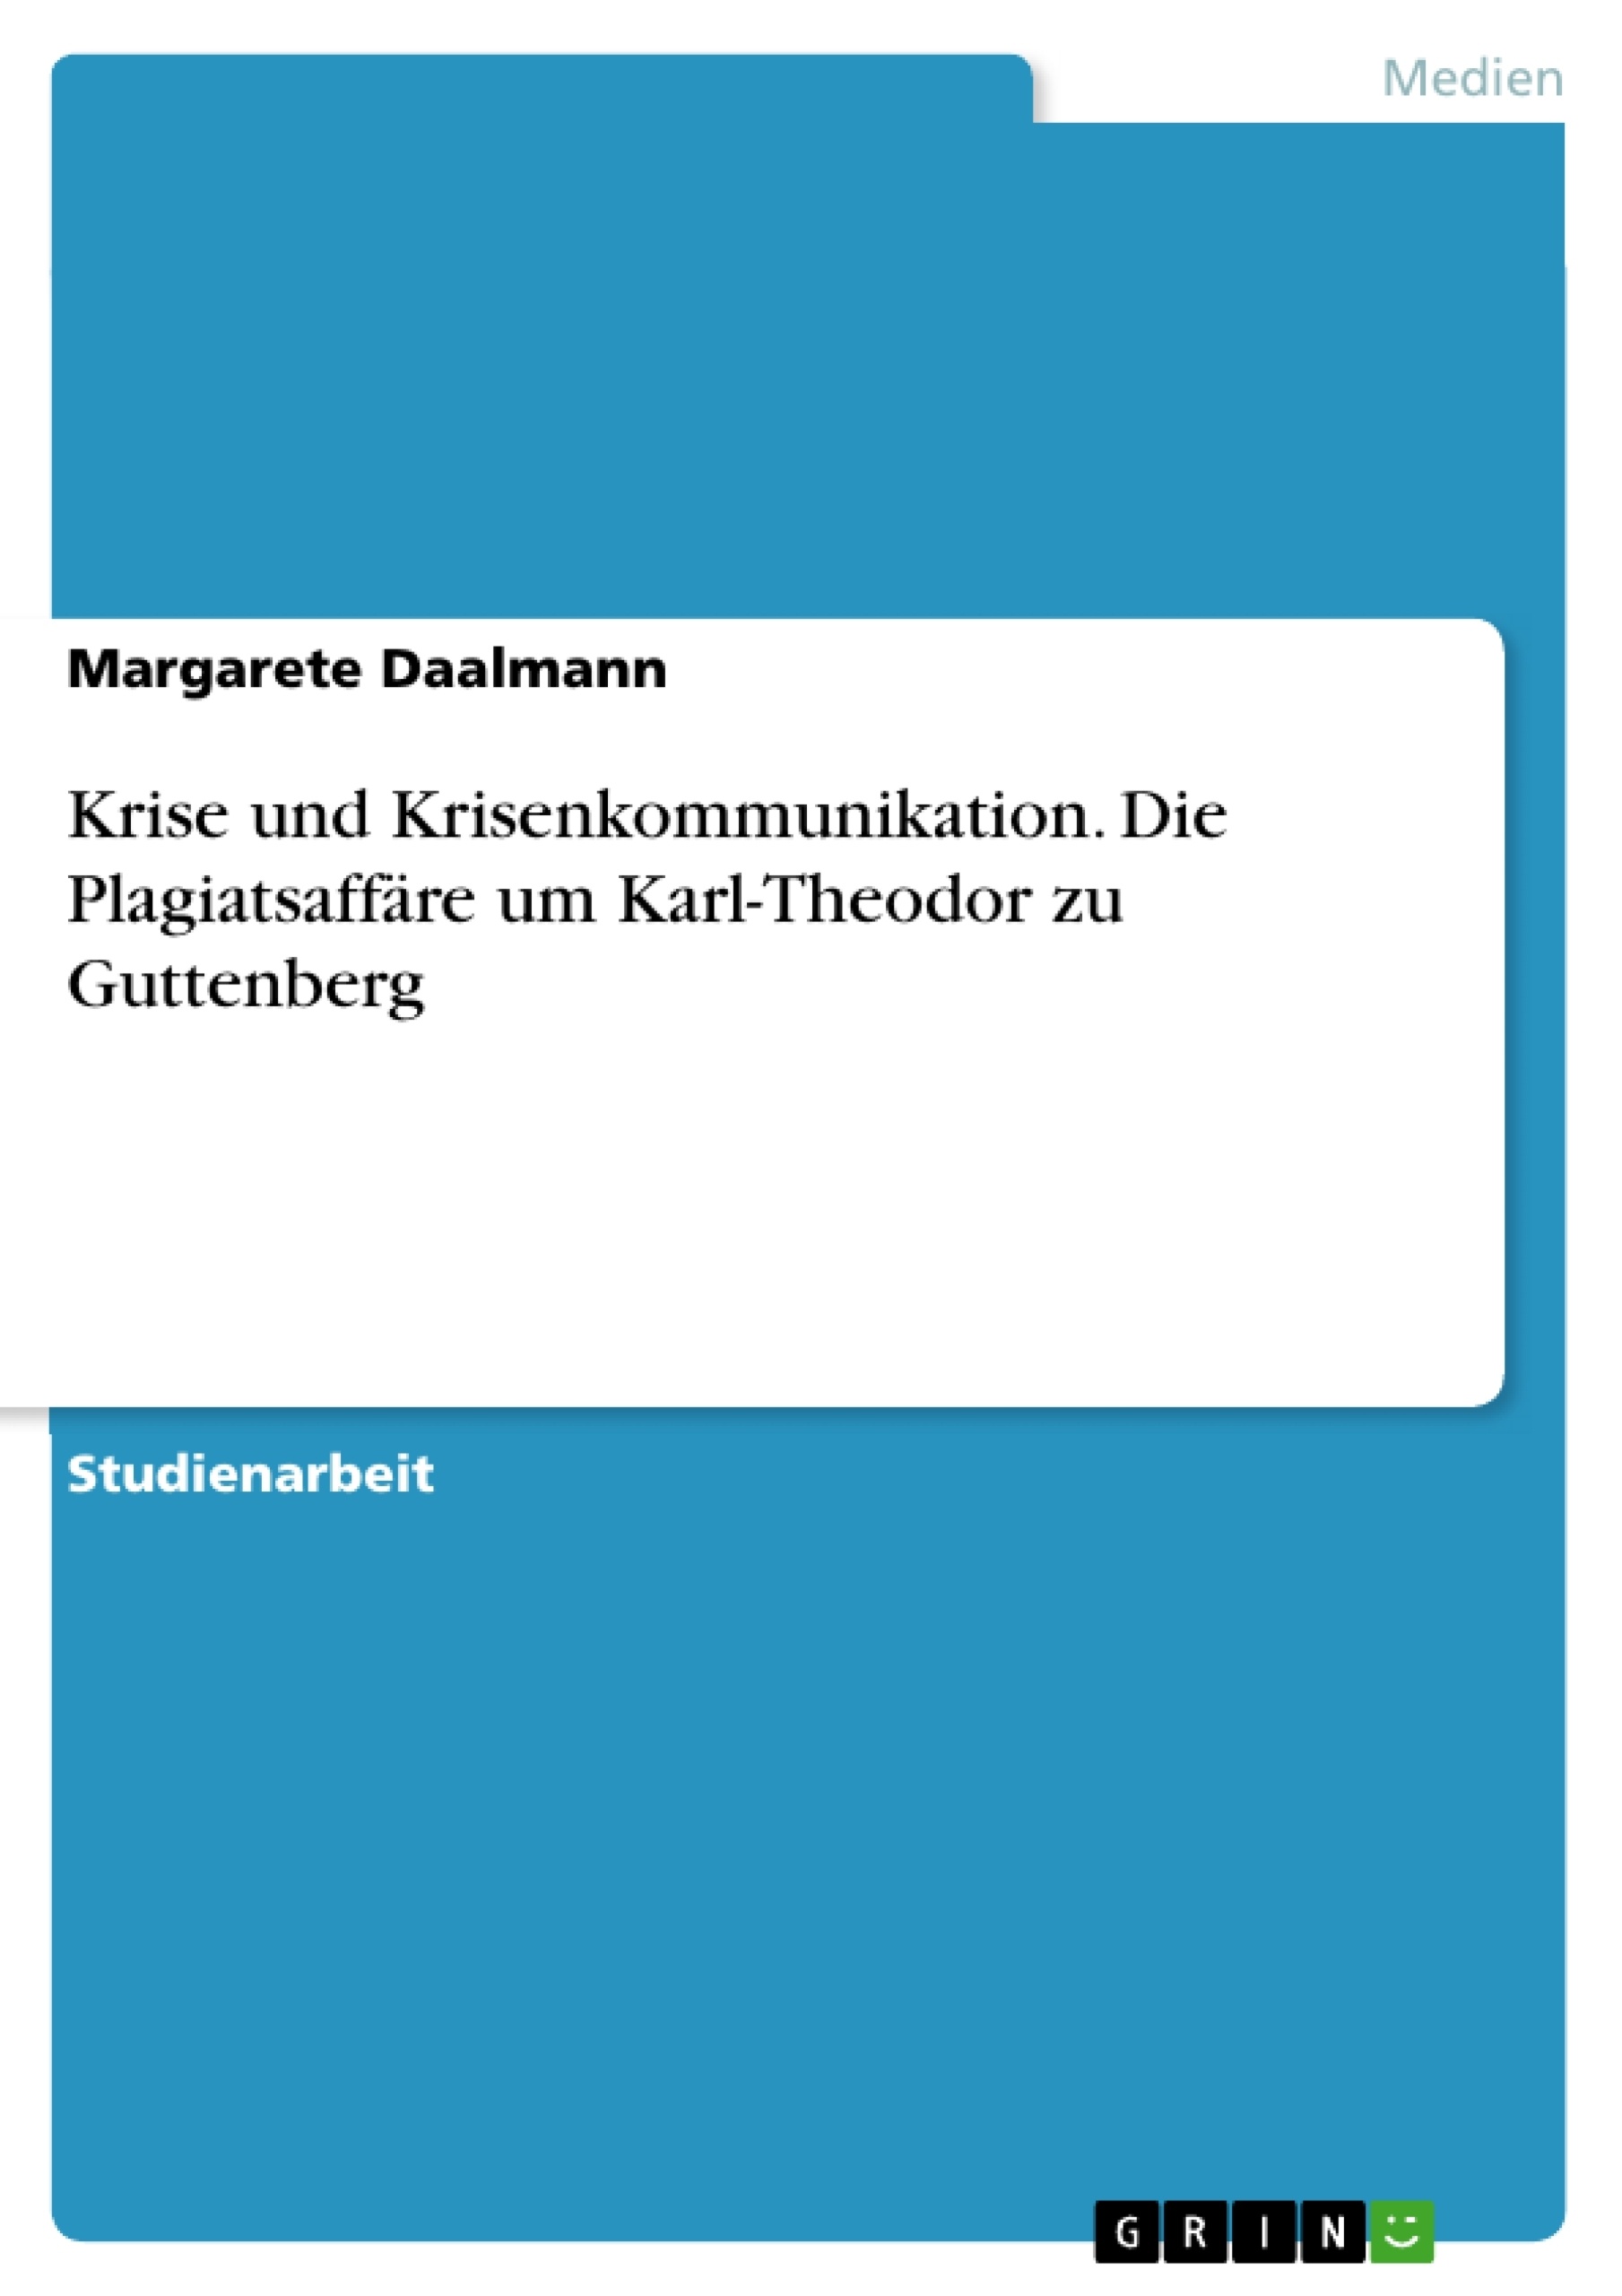 Título: Krise und Krisenkommunikation. Die Plagiatsaffäre um Karl-Theodor zu Guttenberg